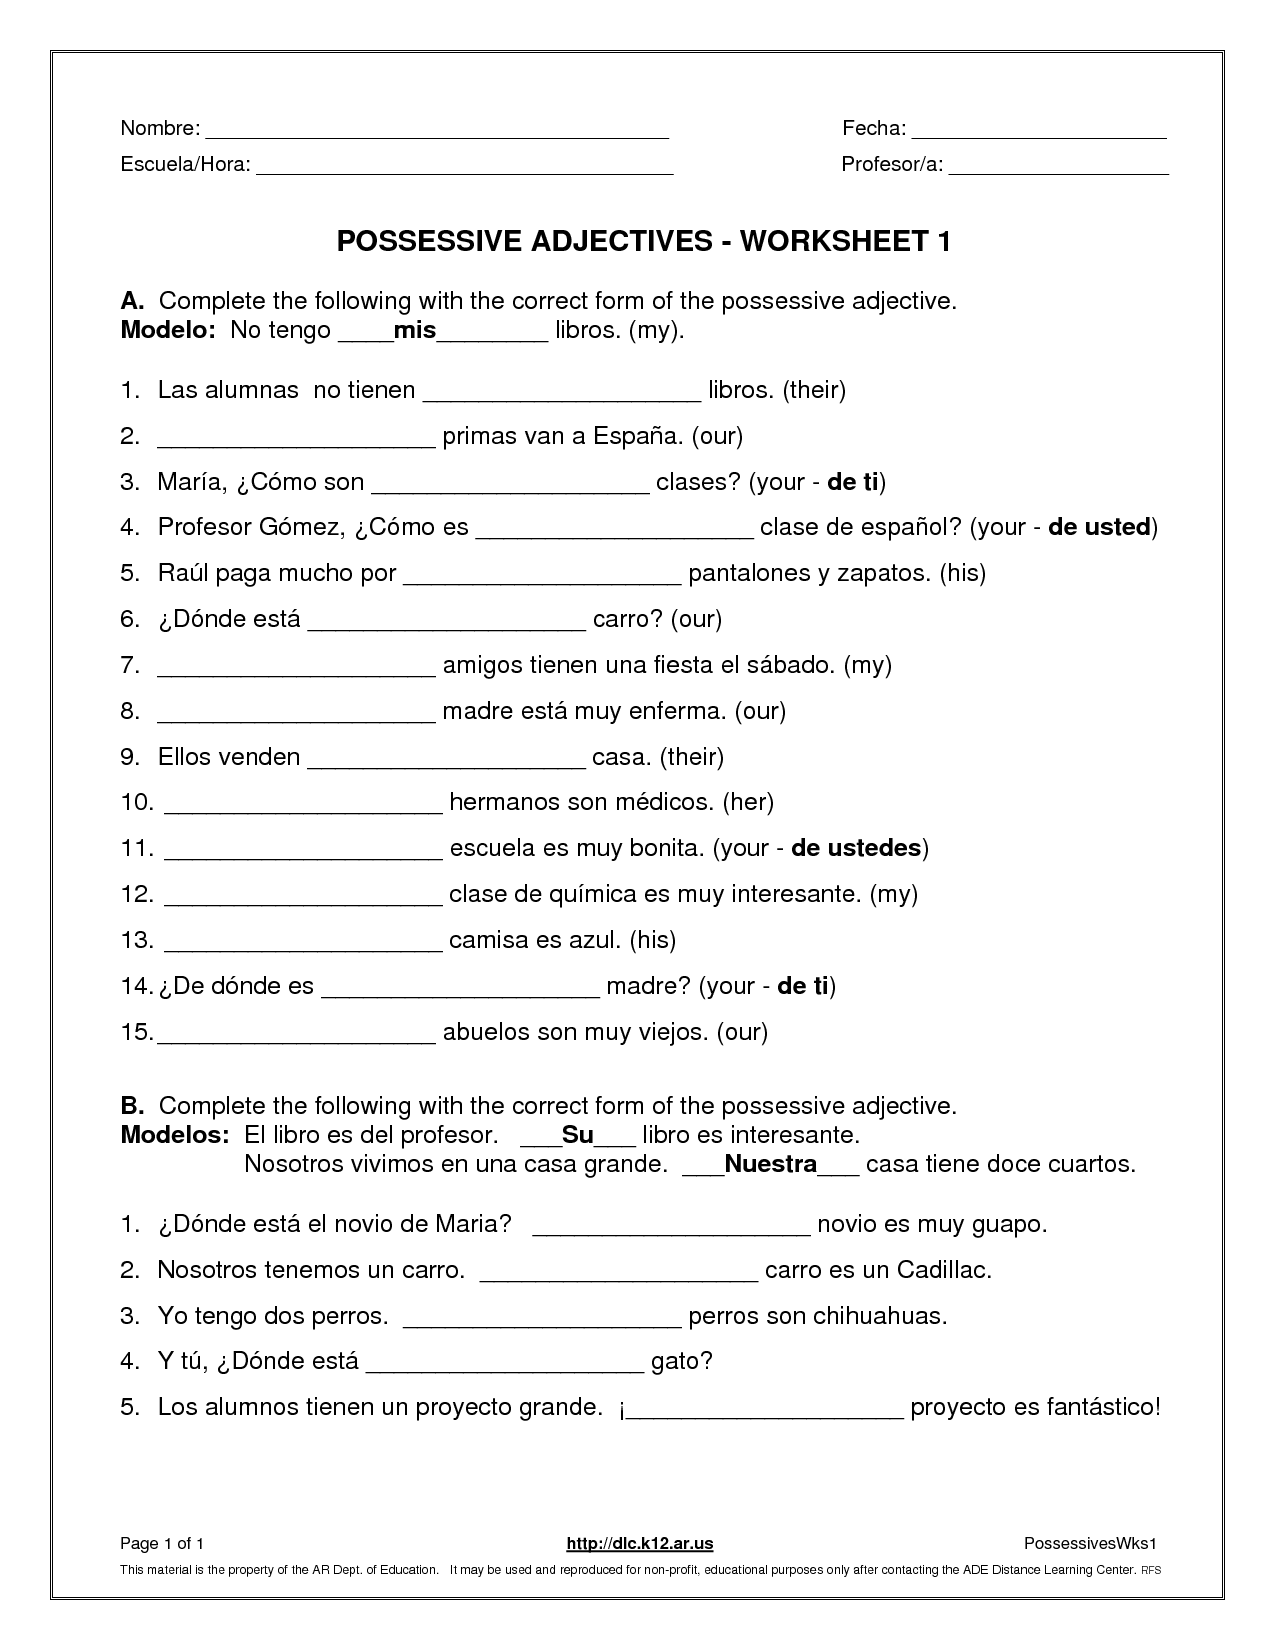 Spanish Possessive Adjectives Worksheet